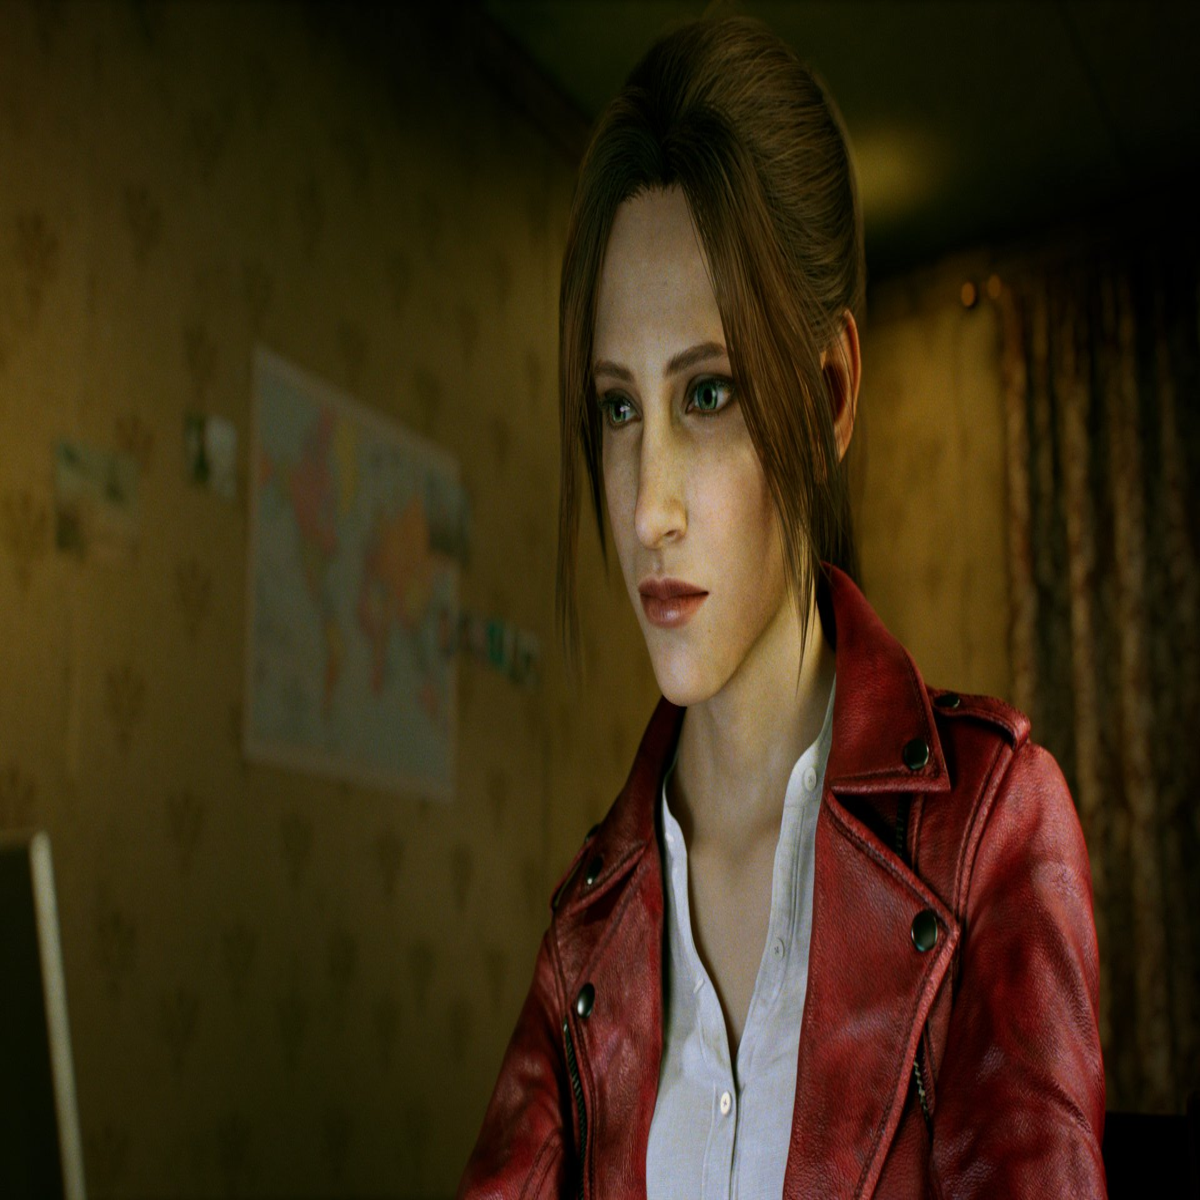 Fortnite: Leon e Claire, de Resident Evil 2, são as novas skins do